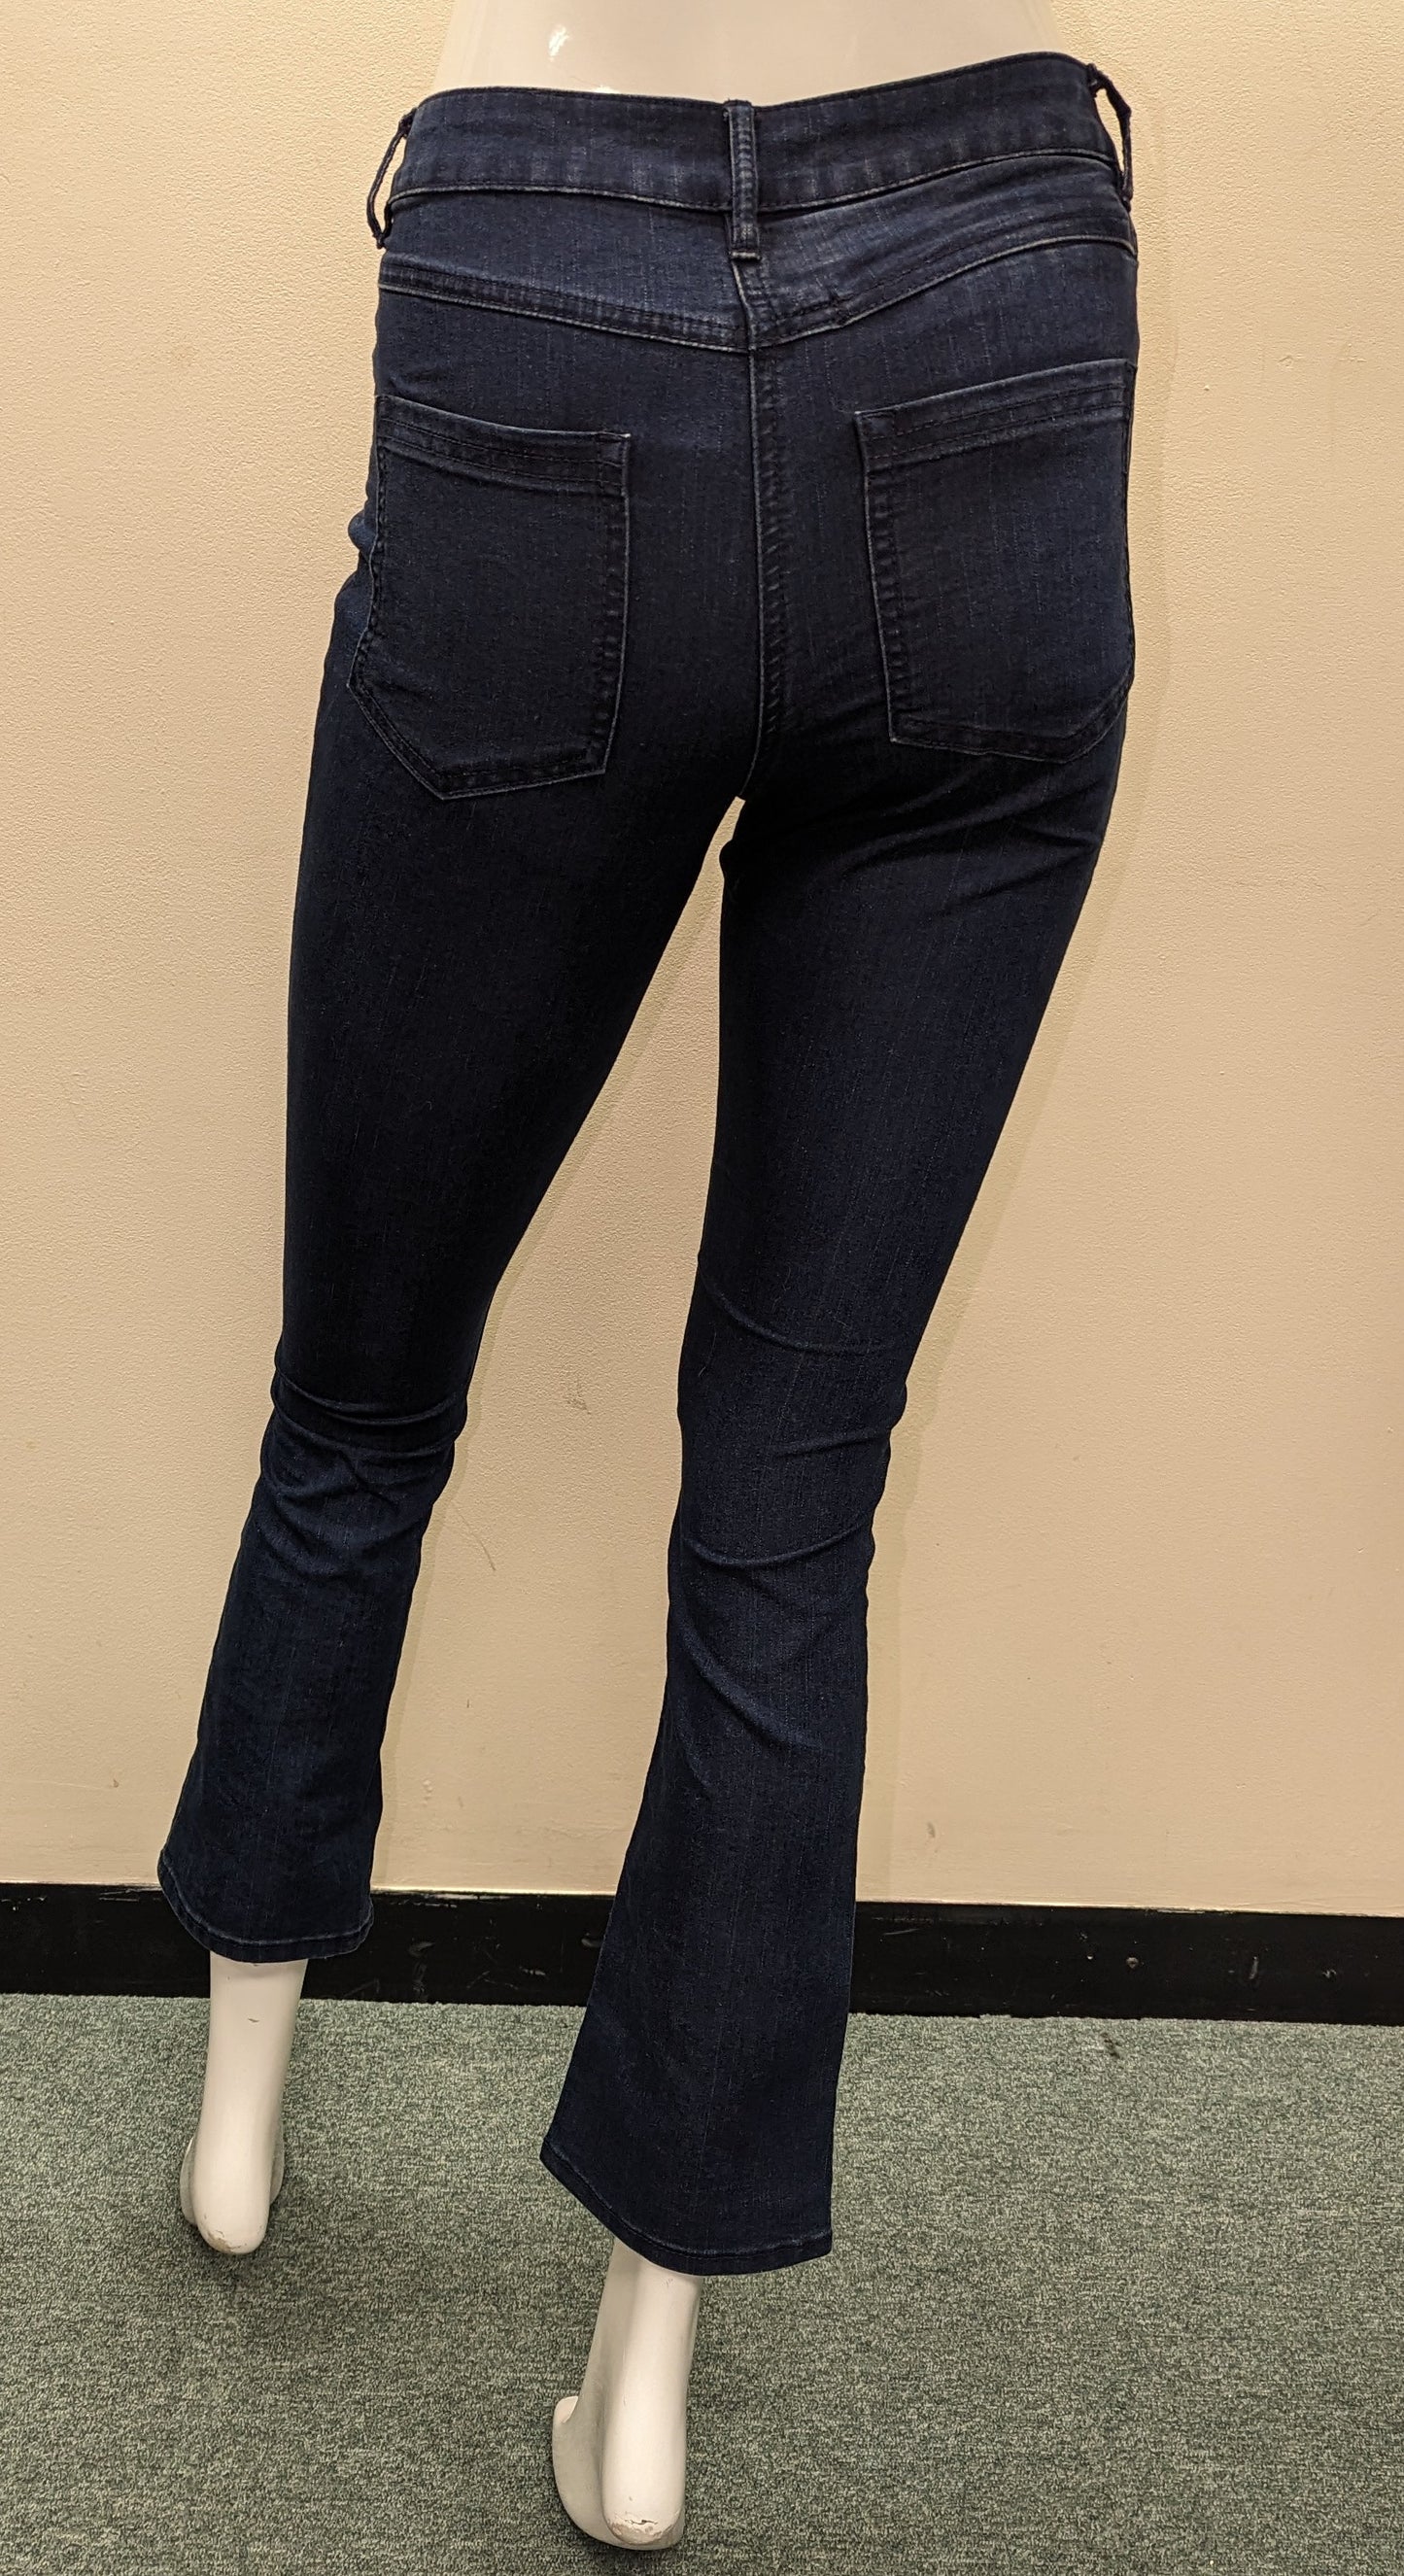 Ladies Jeans - Size 8S